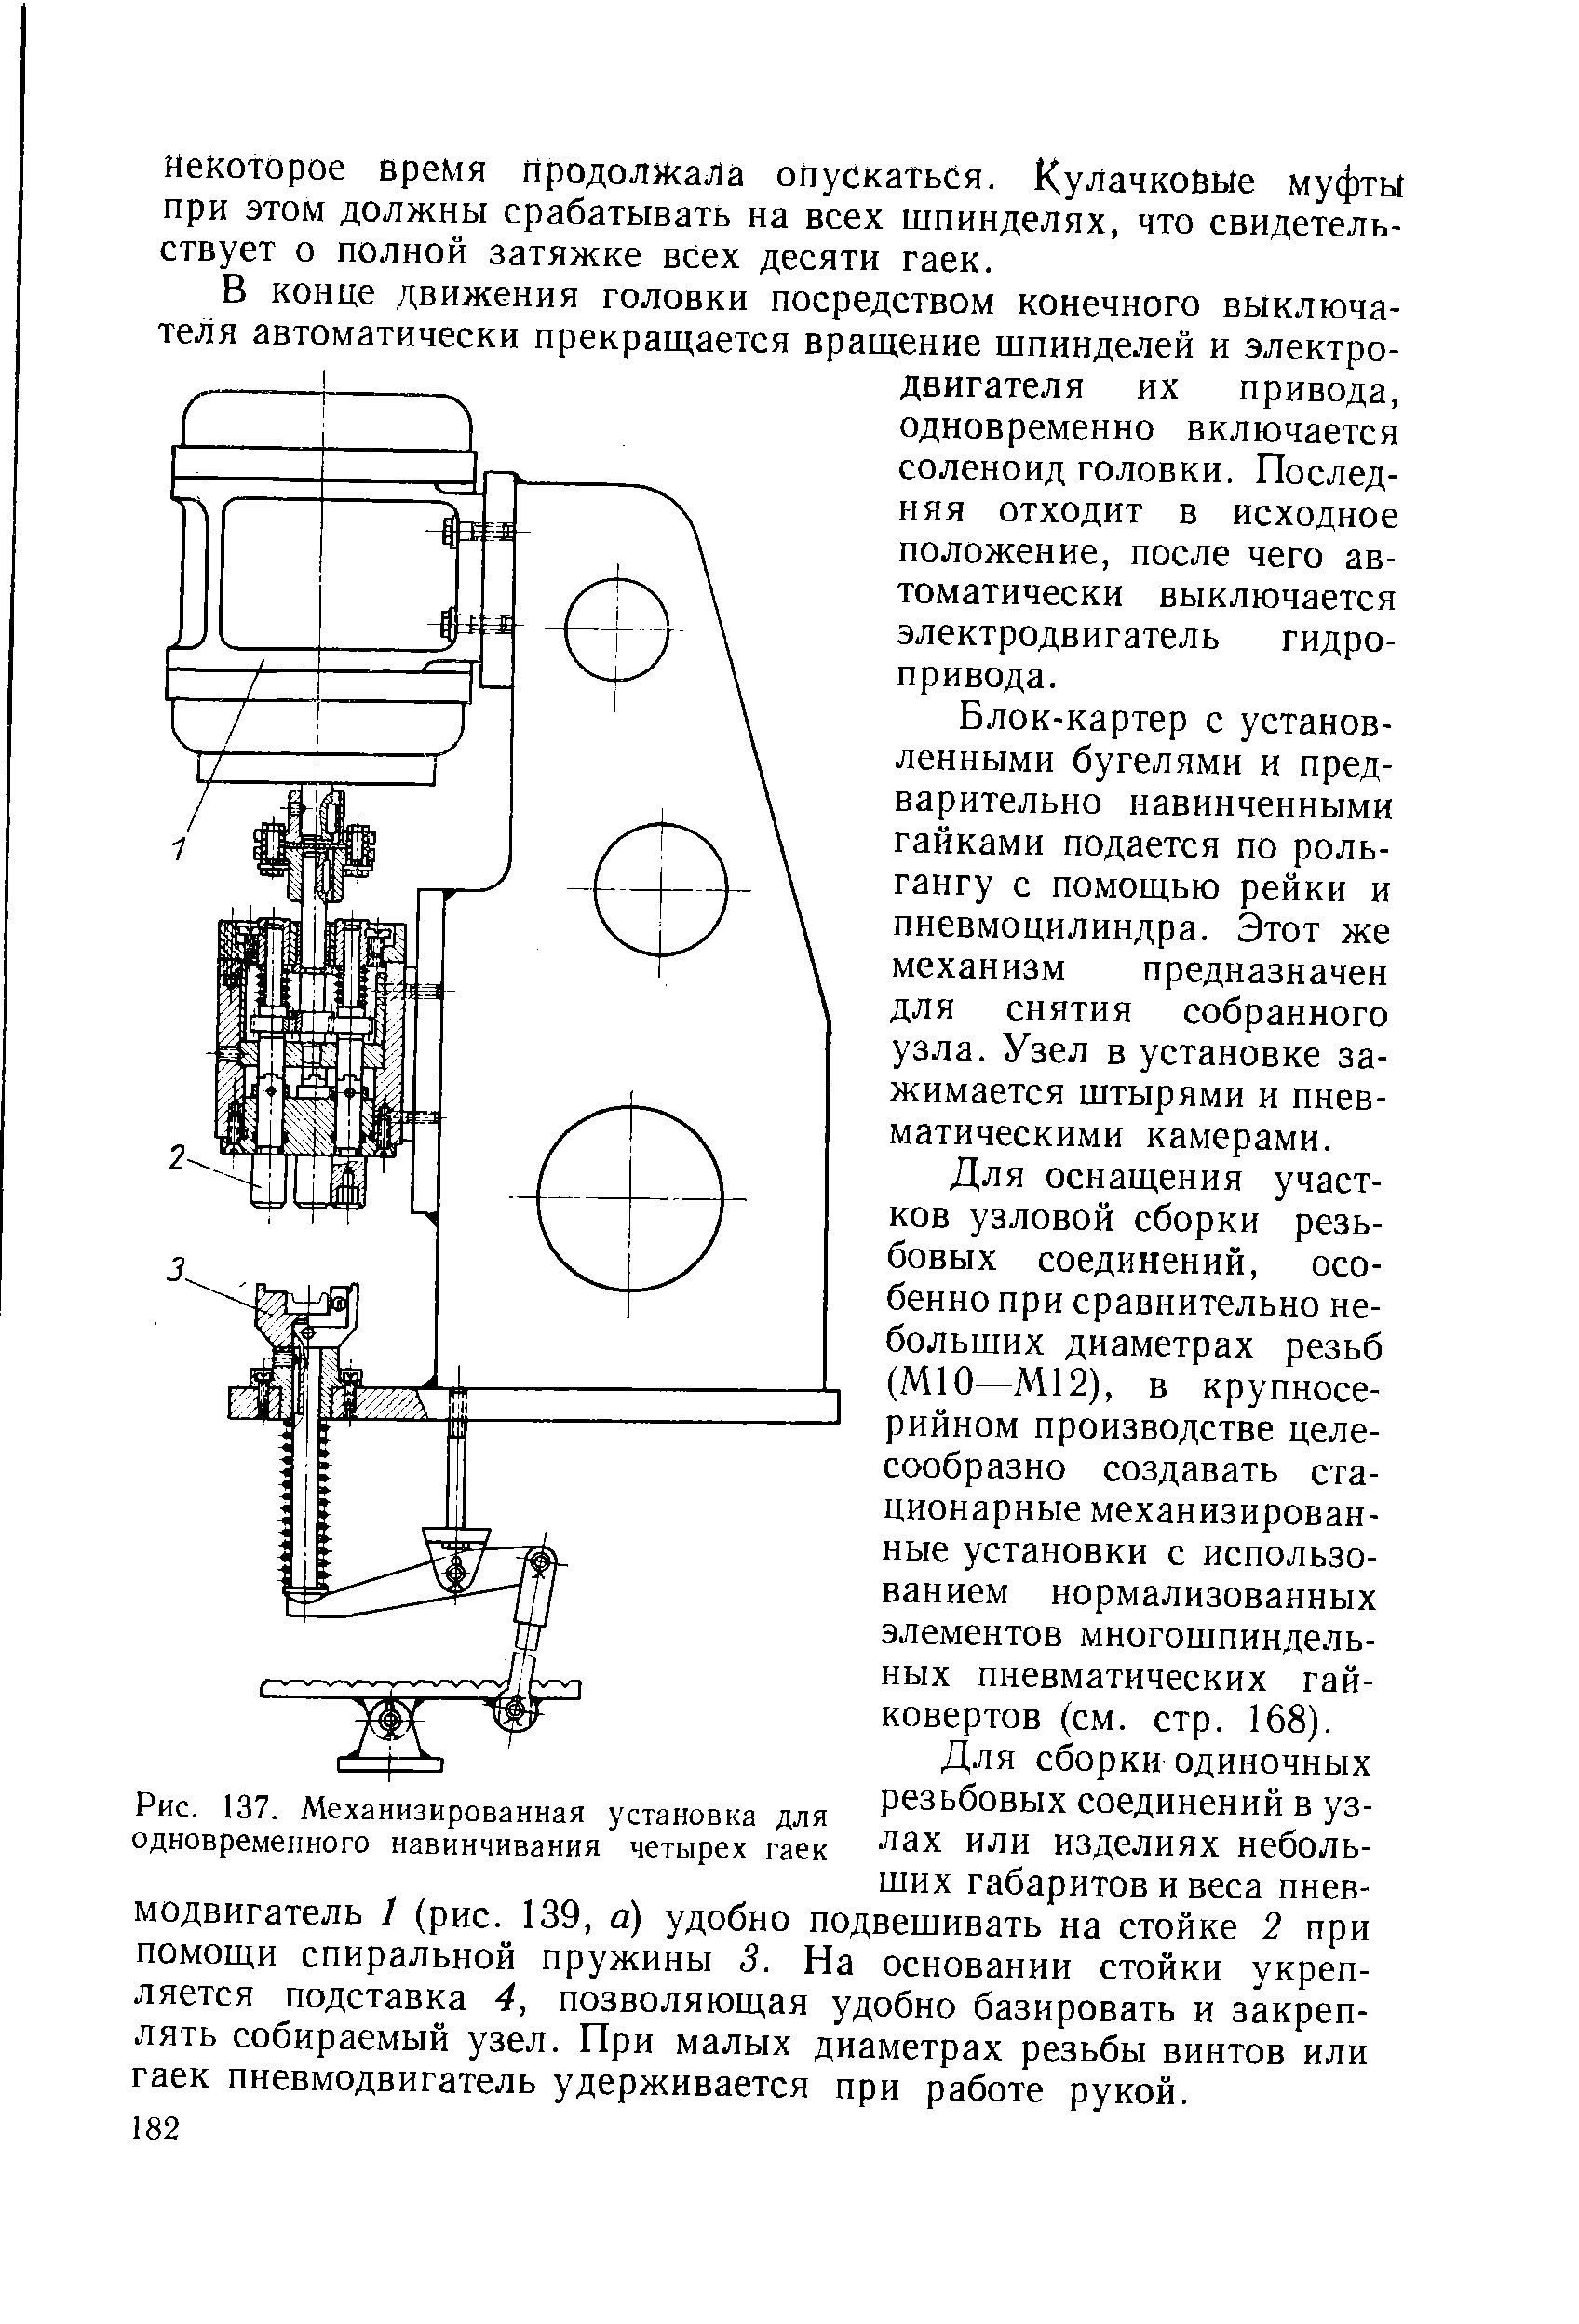 Рис. 137. Механизированная установка для одновременного навинчивания четырех гаек
